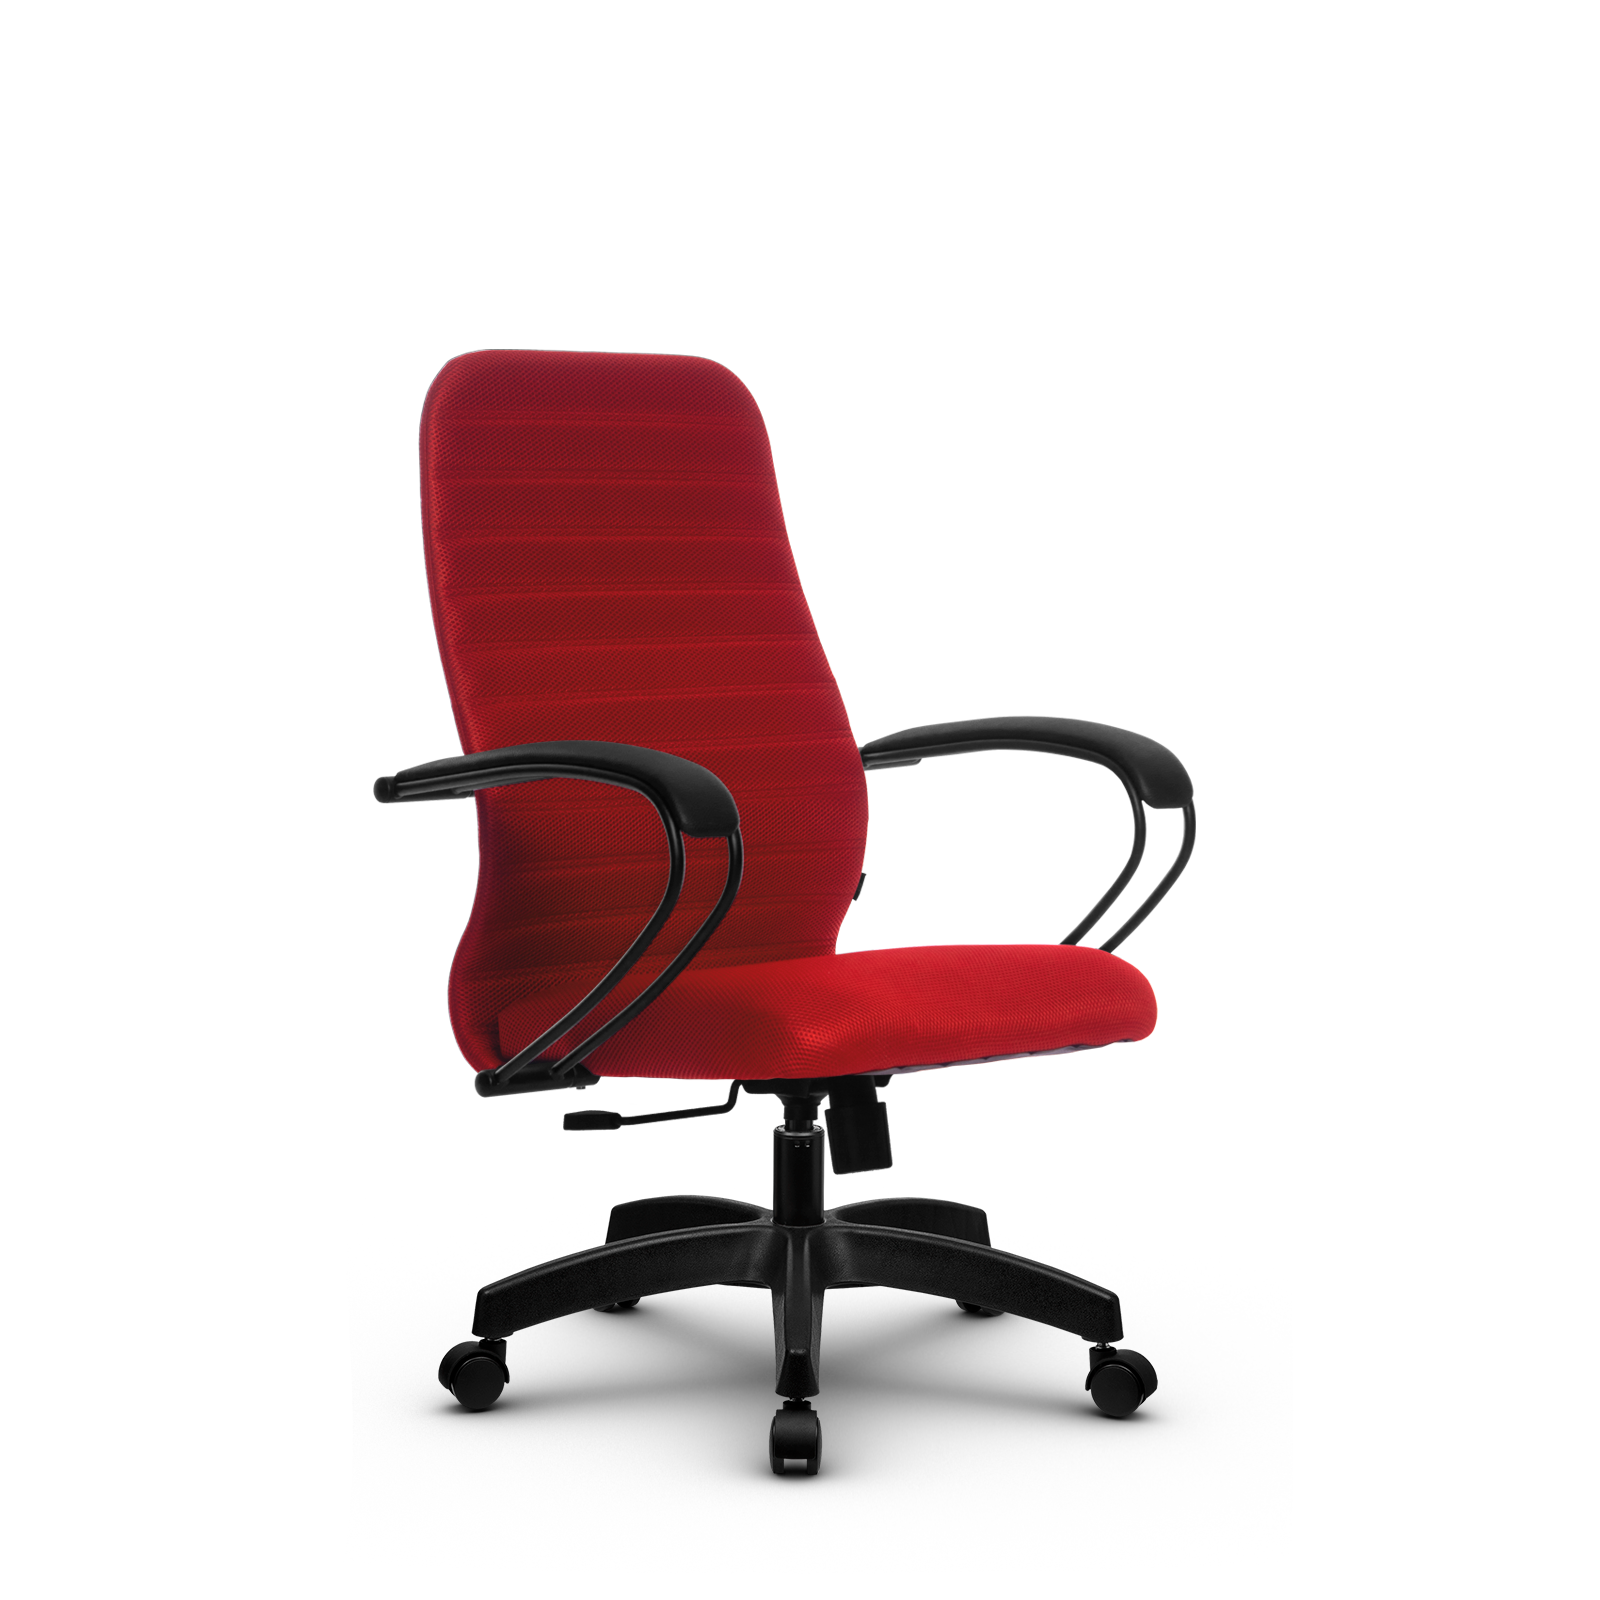 90488592 Офисное кресло Su z312463811 прочный сетчатый материал цвет красный STLM-0248474 МЕТТА